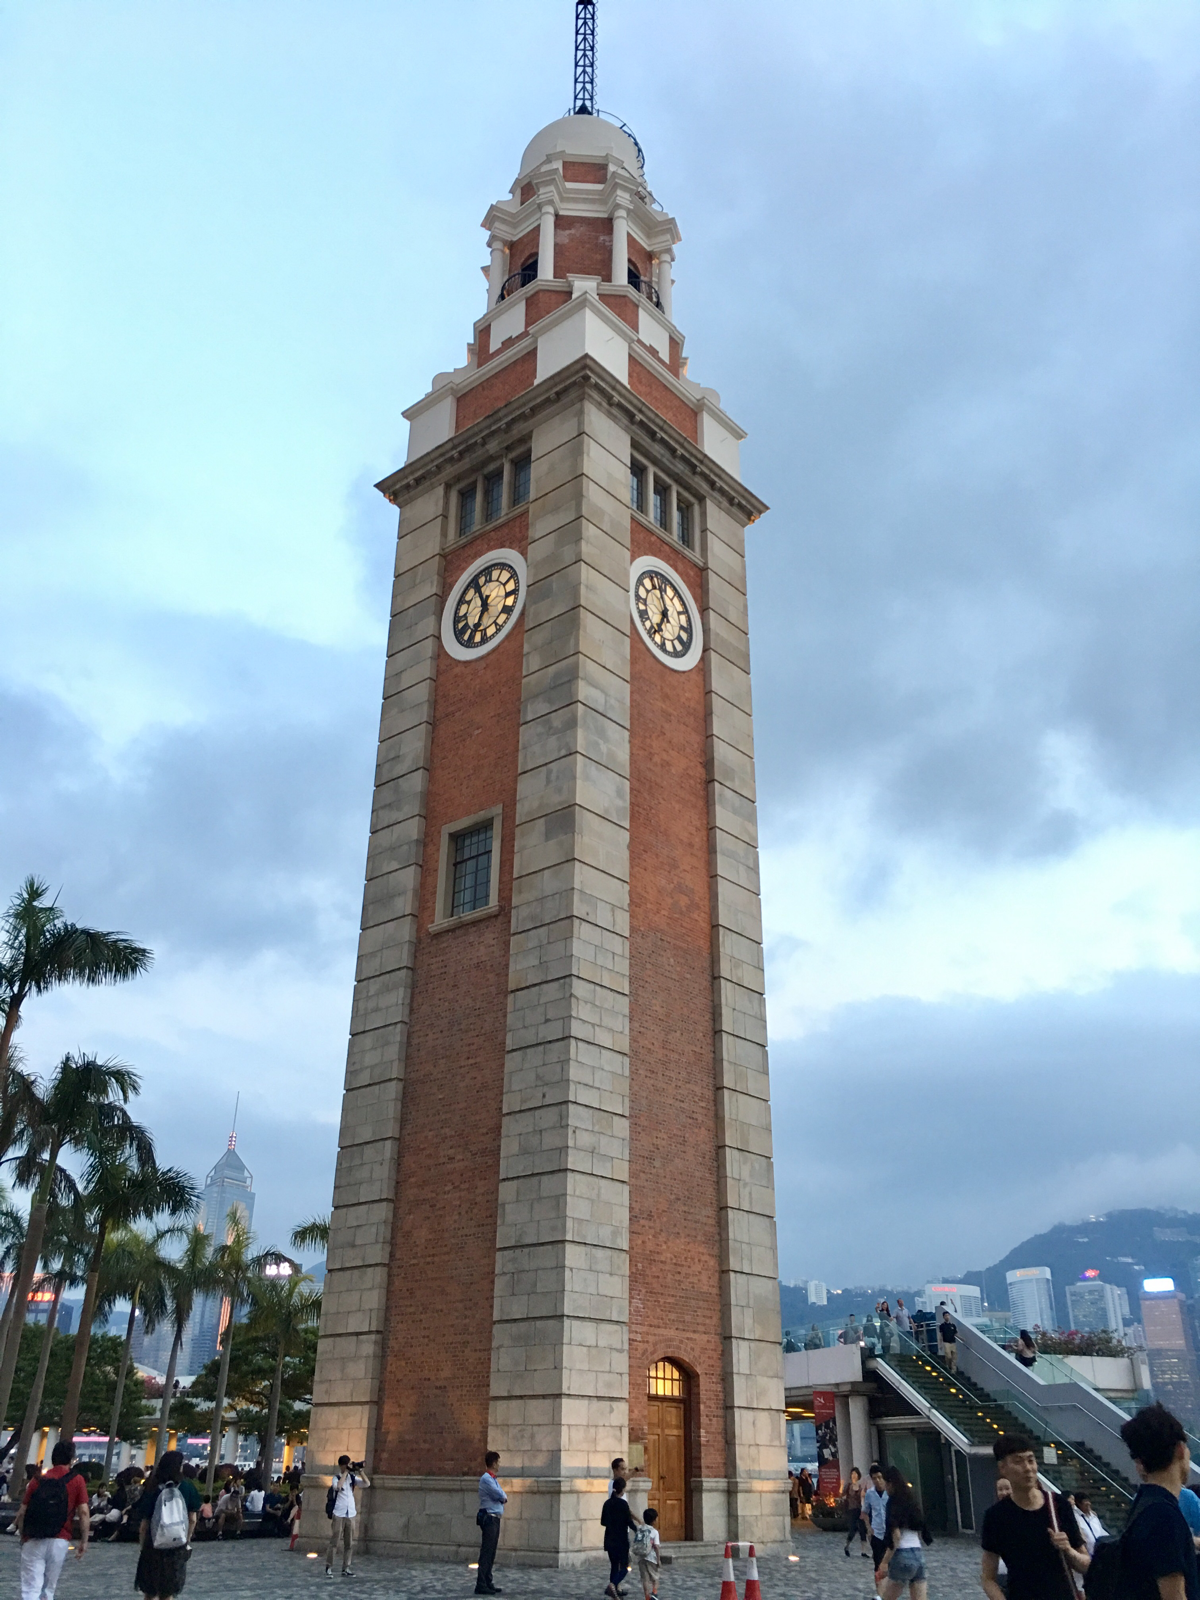 1881 Heritageは水上警察がお洒落なショッピングセンターになった施設です〜 香港歴史散歩@尖沙咀